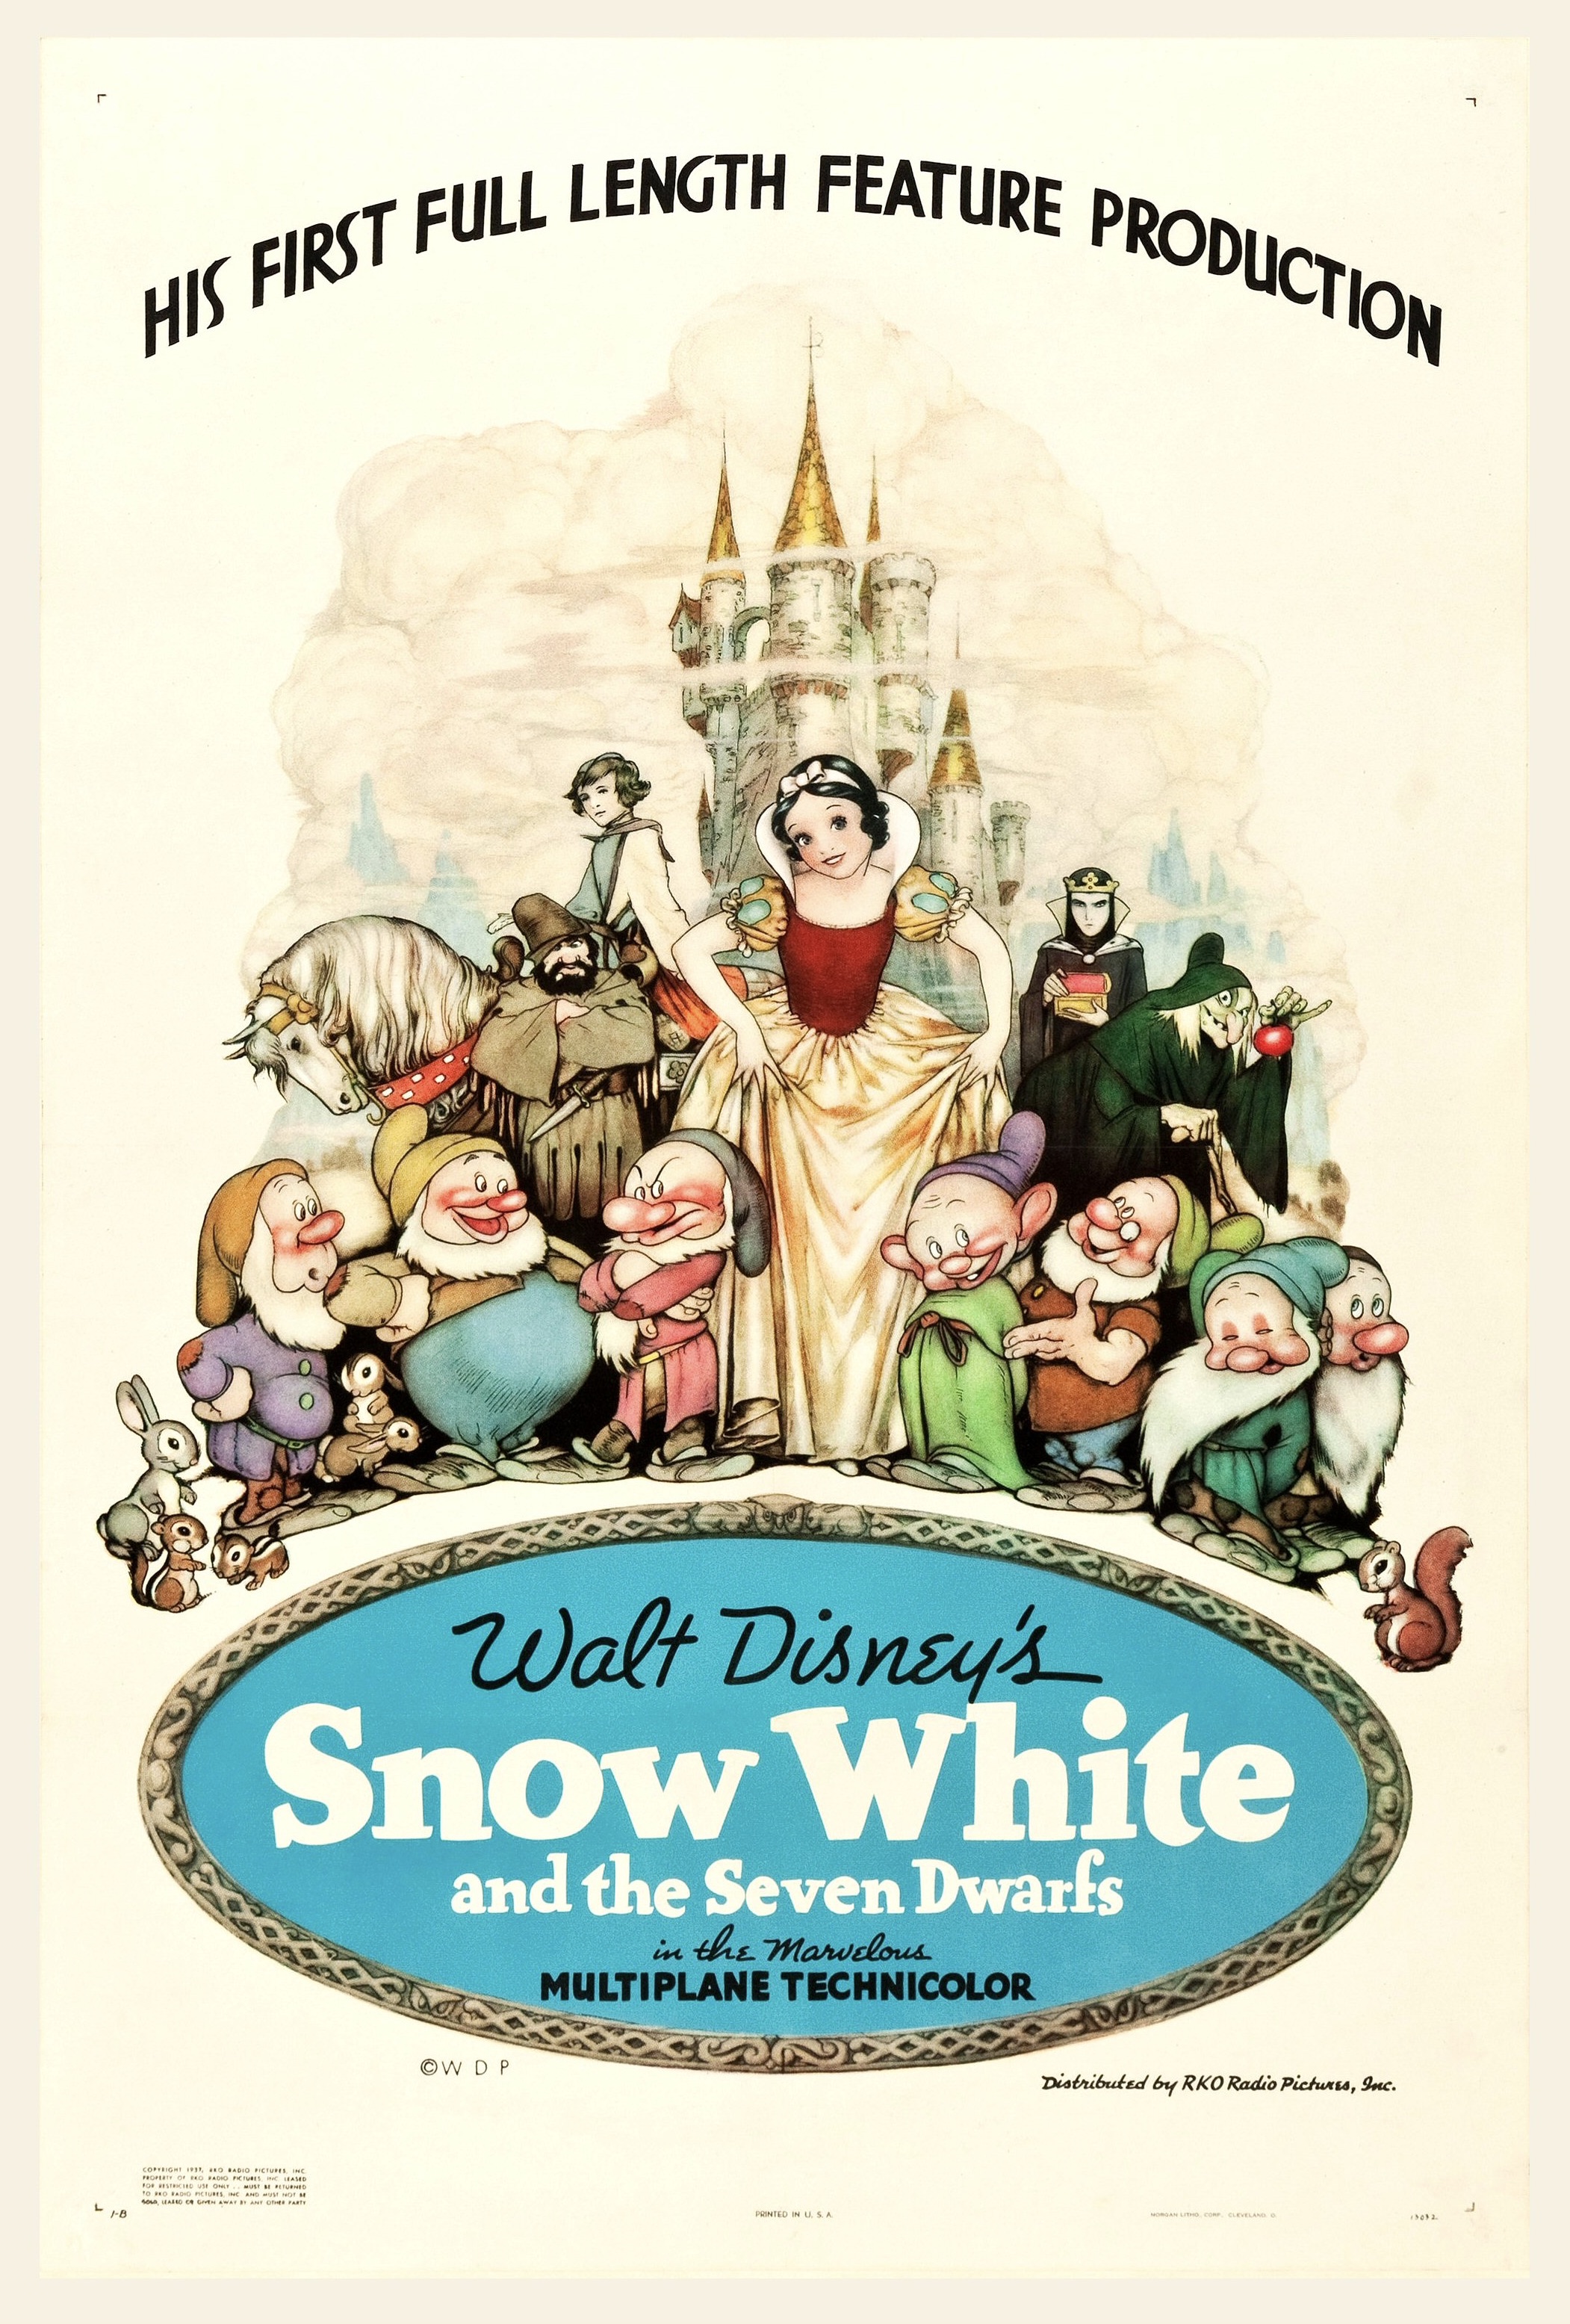 Virginia Davis Colorierte zwei kleine Szenen aus Schneewittchen und die sieben Zwerge (1937, © Disney)